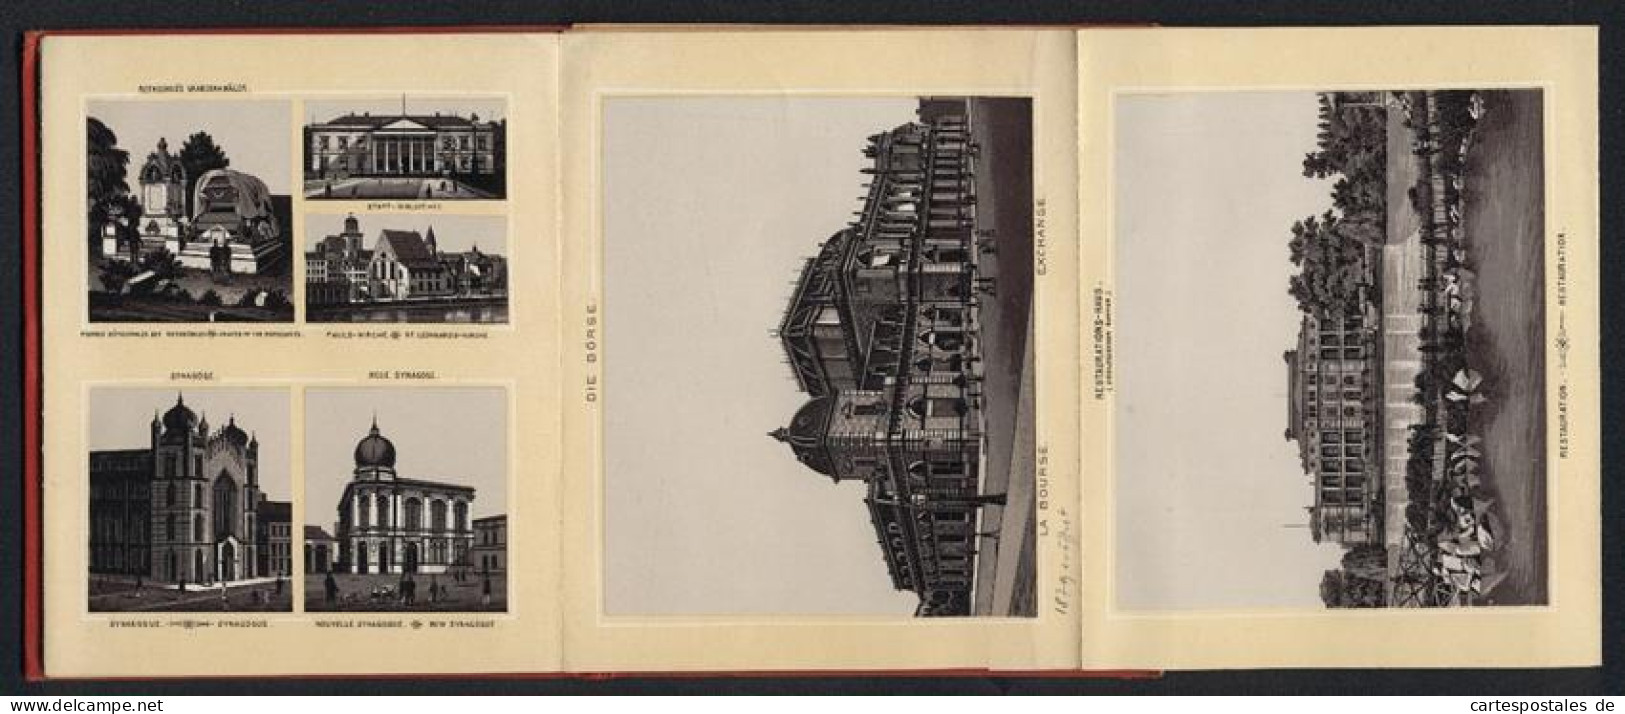 Leporello-Album 30 Lithographie-Ansichten Frankfurt / Main, Synagogen, Rothschild Grab, Zollhafen, Panorama, Bahnhof  - Litografía